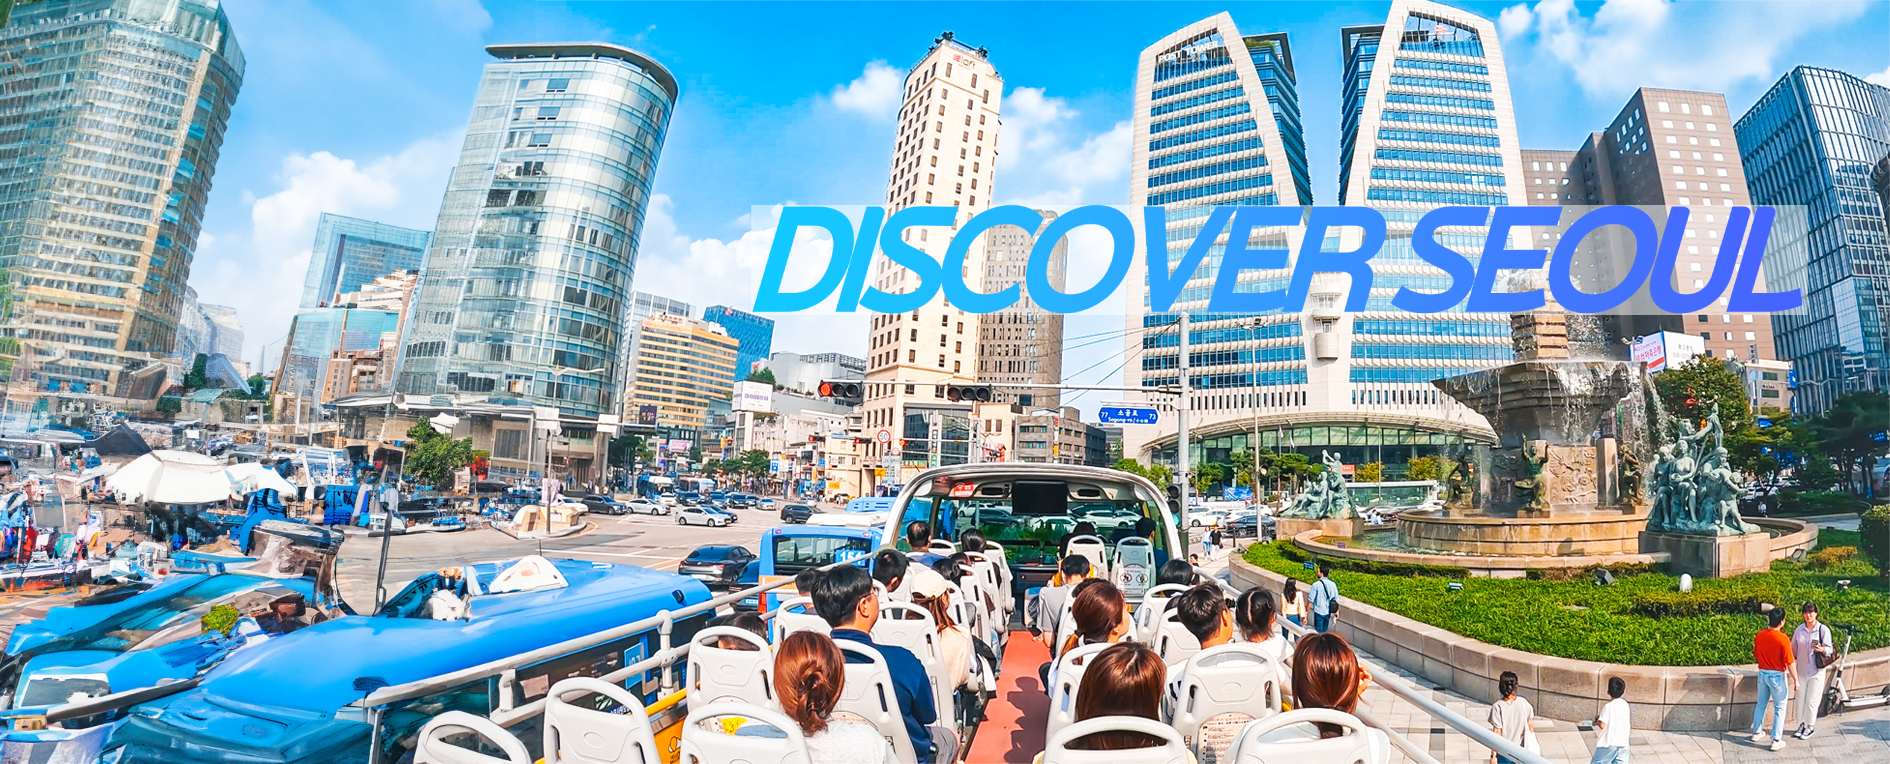 tour bus korea